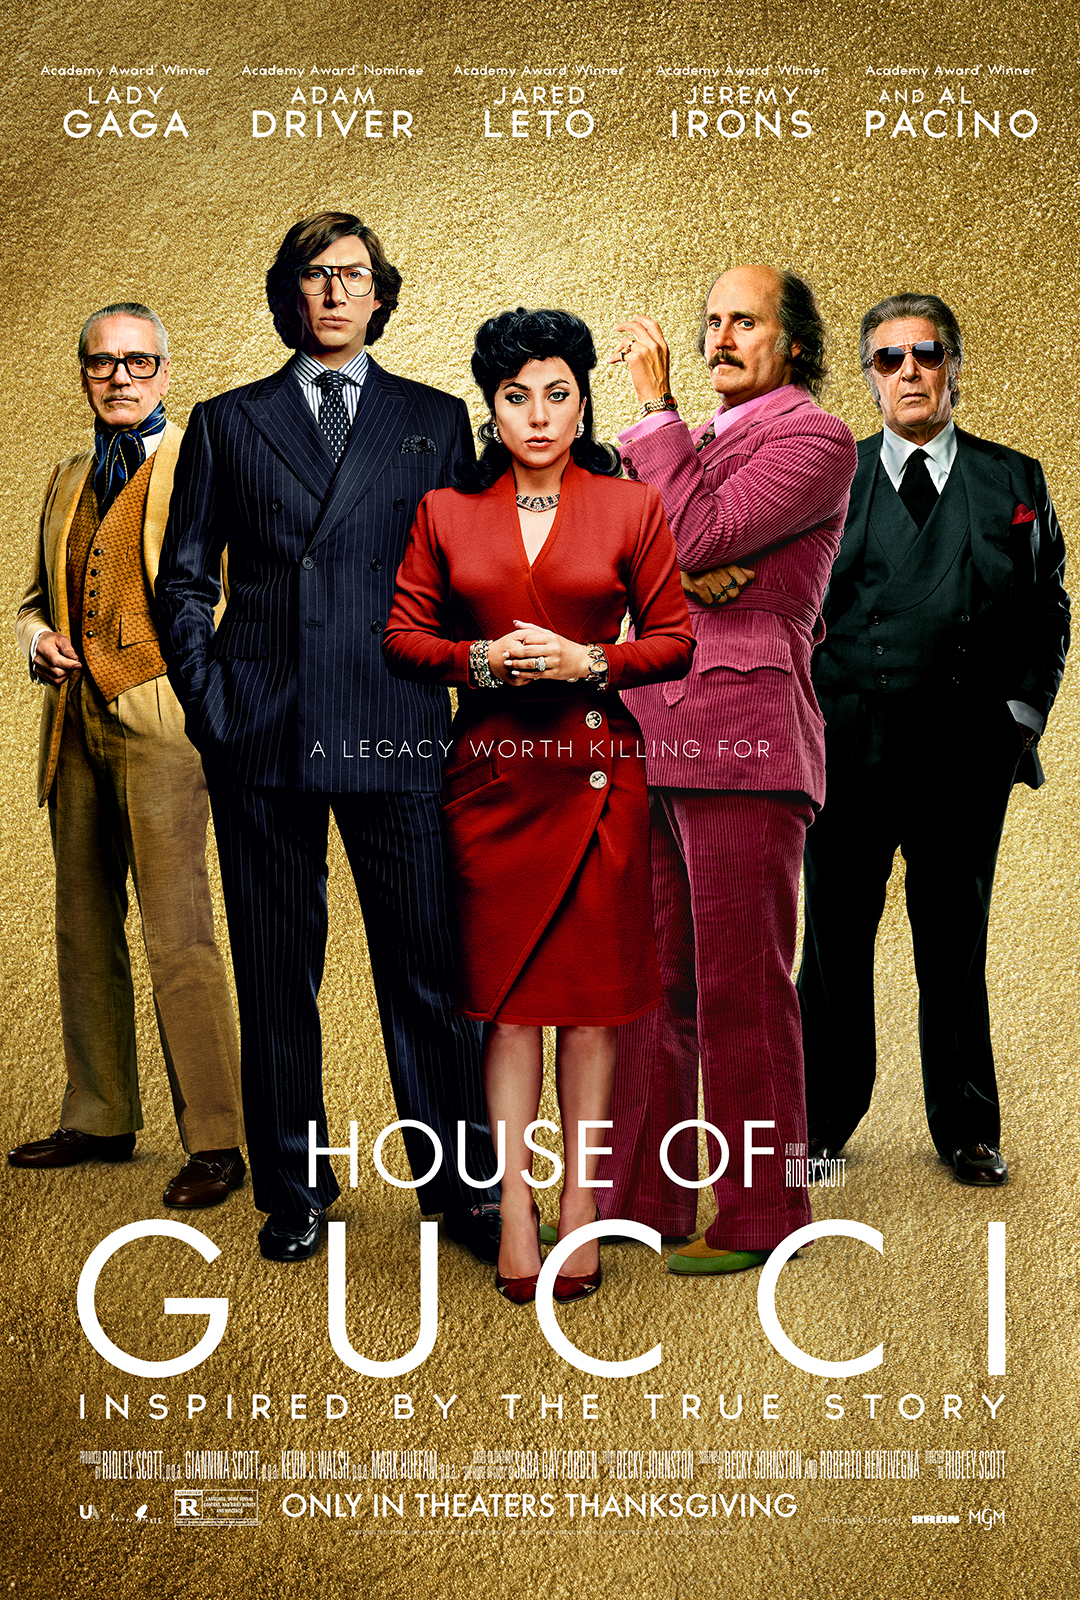 ดูหนังออนไลน์ฟรี House of Gucci (2021) เฮาส์ ออฟ กุชชี่ หนังเต็มเรื่อง หนังมาสเตอร์ ดูหนังHD ดูหนังออนไลน์ ดูหนังใหม่